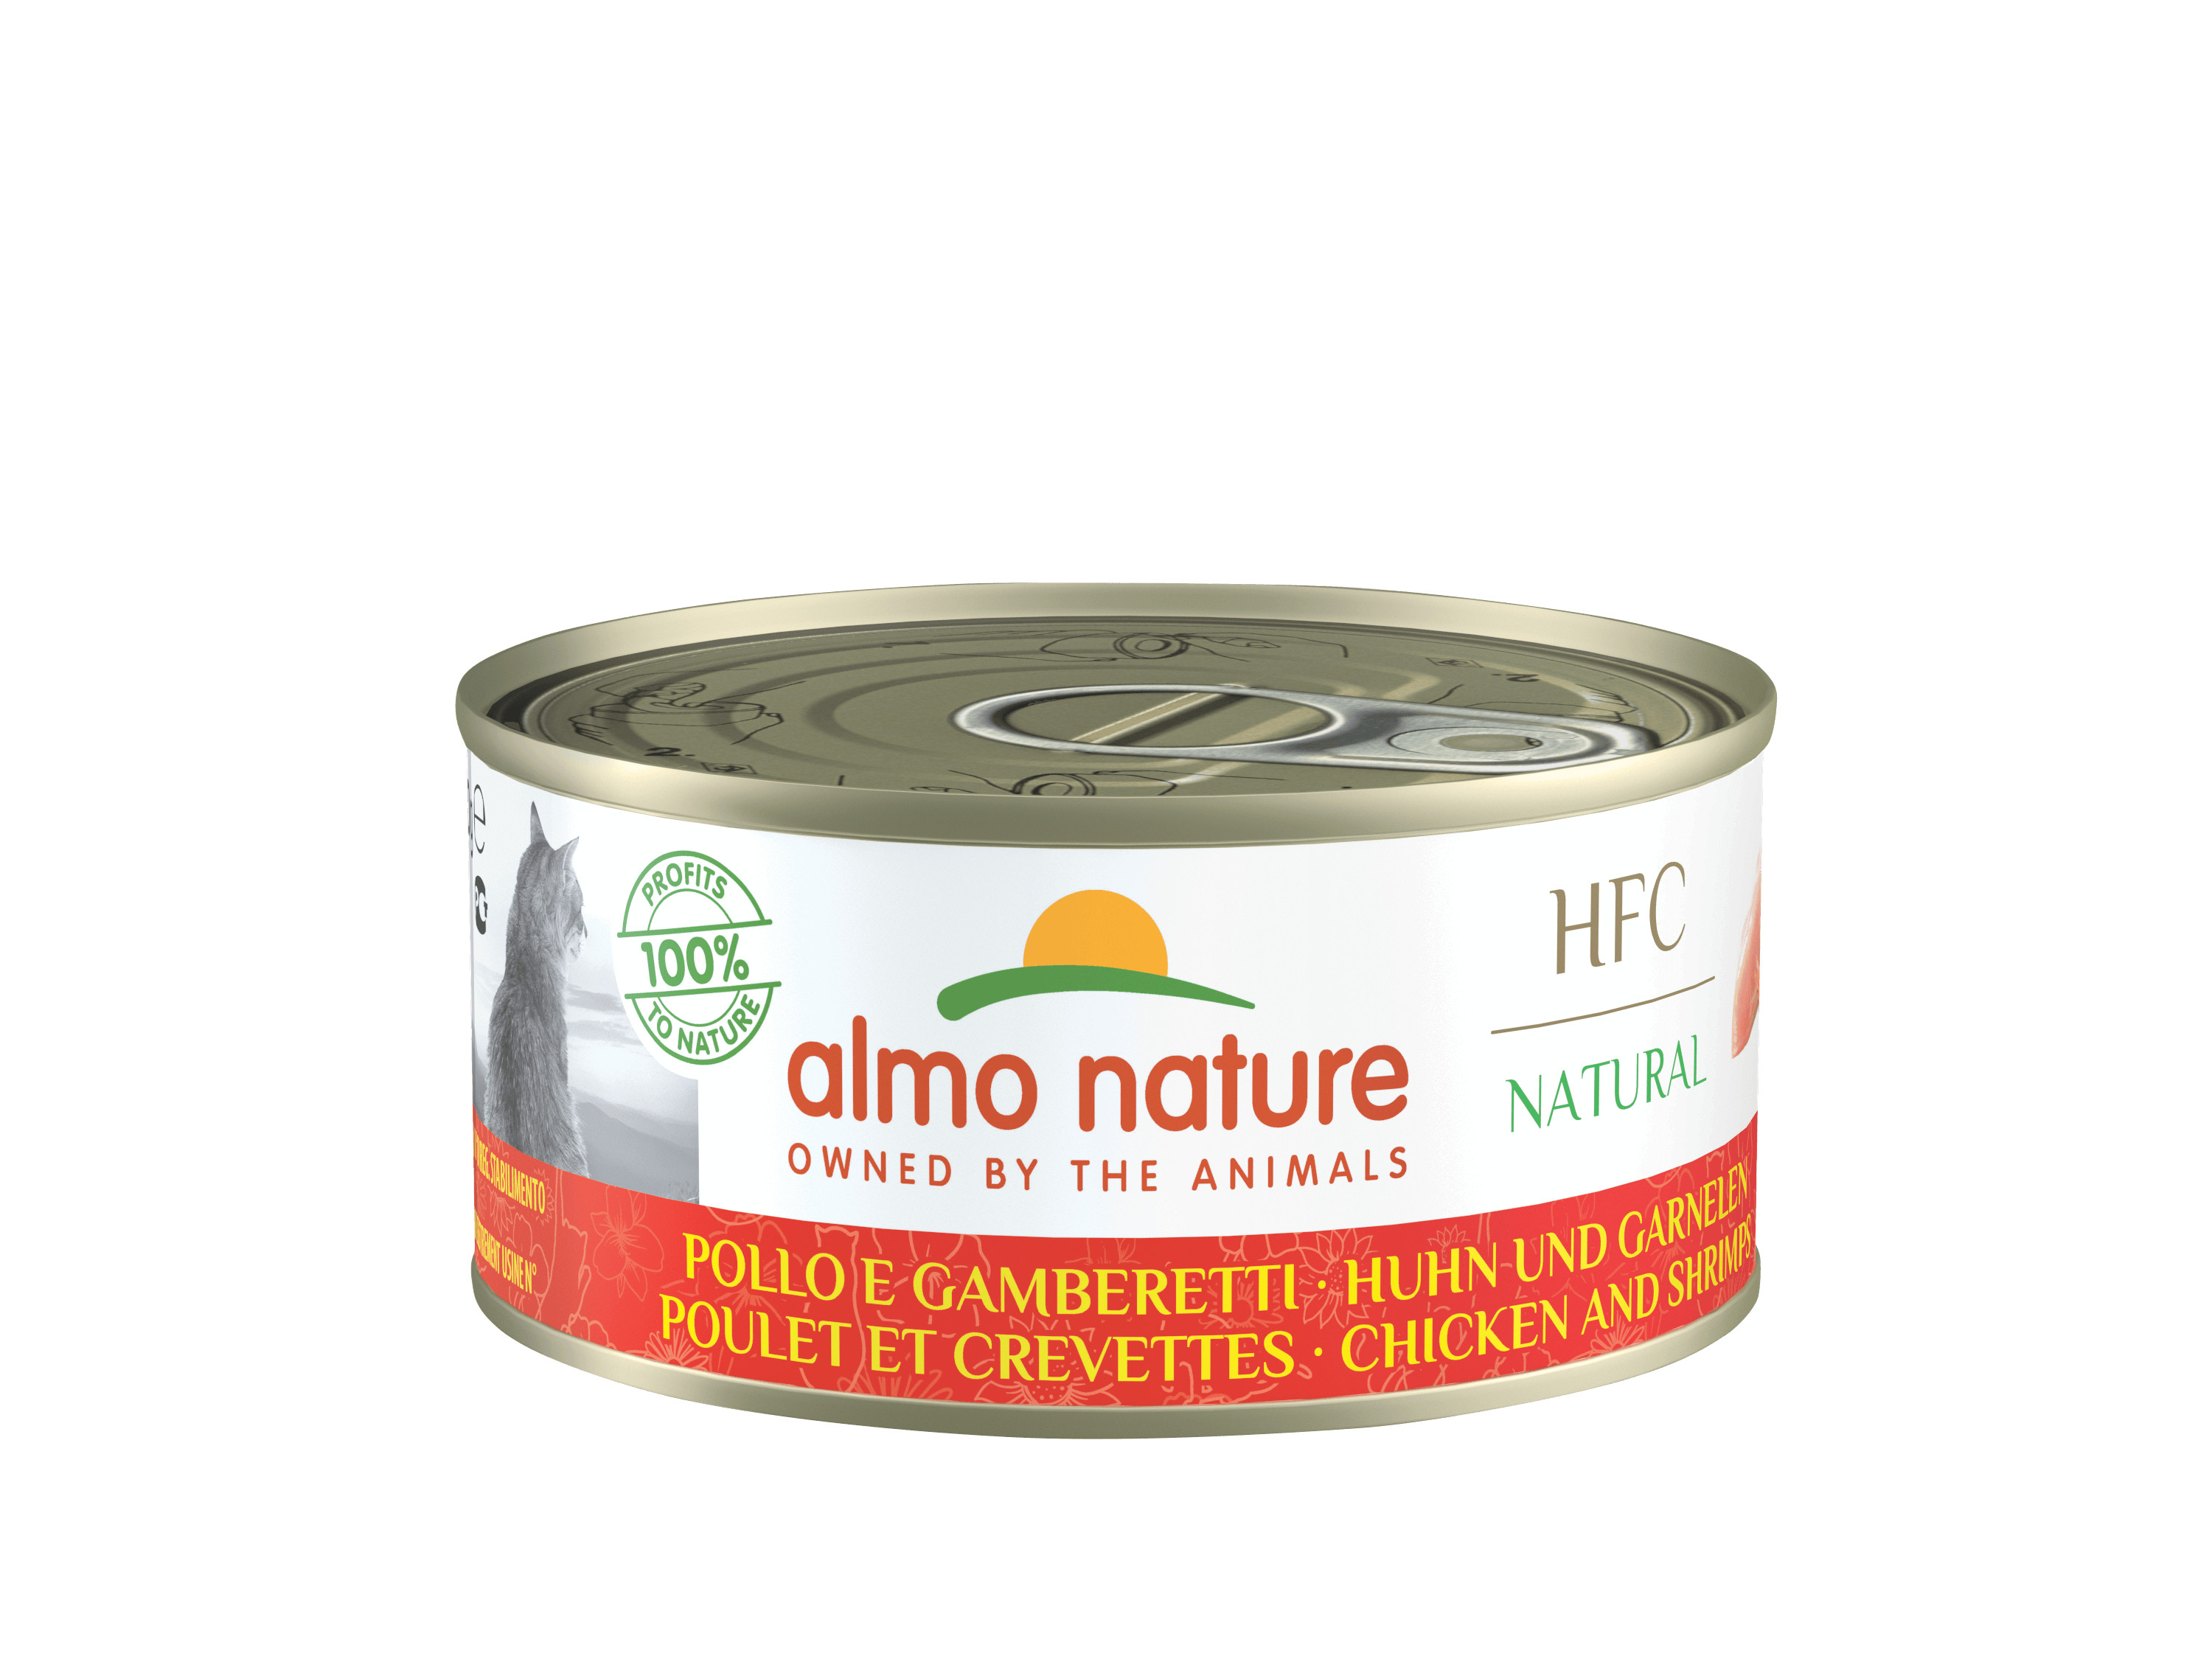 Almo Nature HFC Natural kylling og rejer kattefoder (150g)